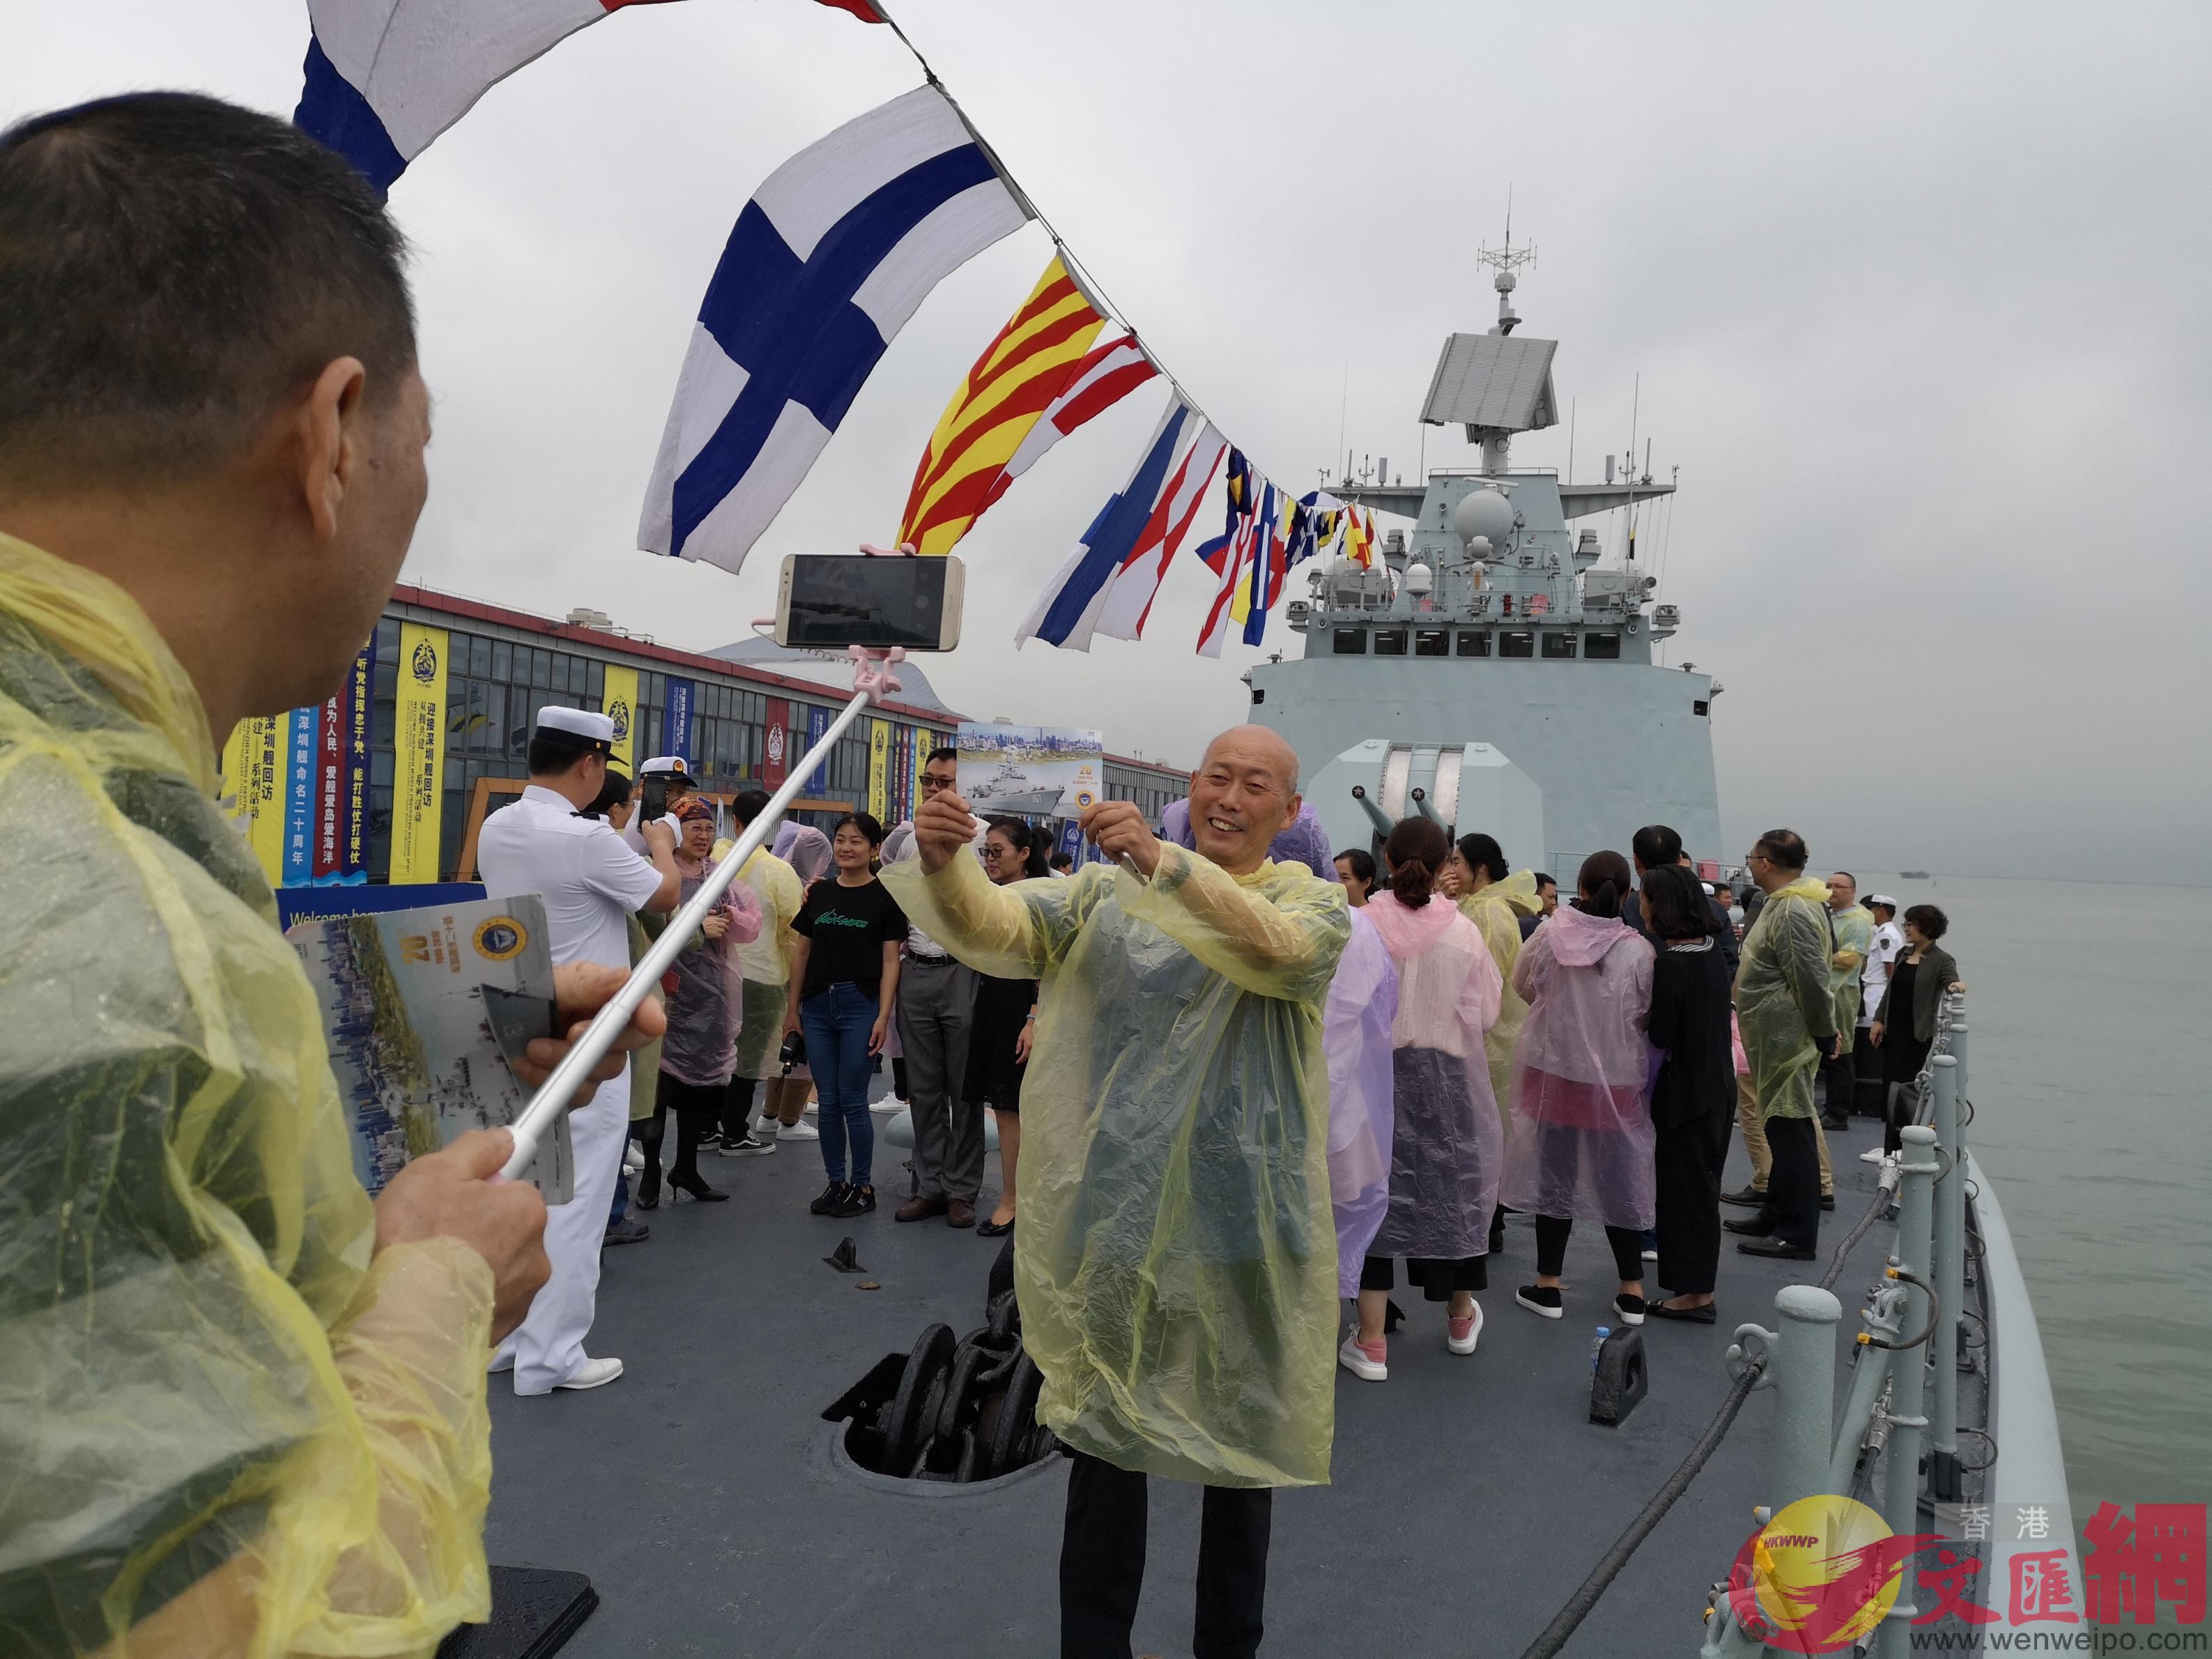 熱情的市民紛紛在甲板上留影 記者郭若溪攝